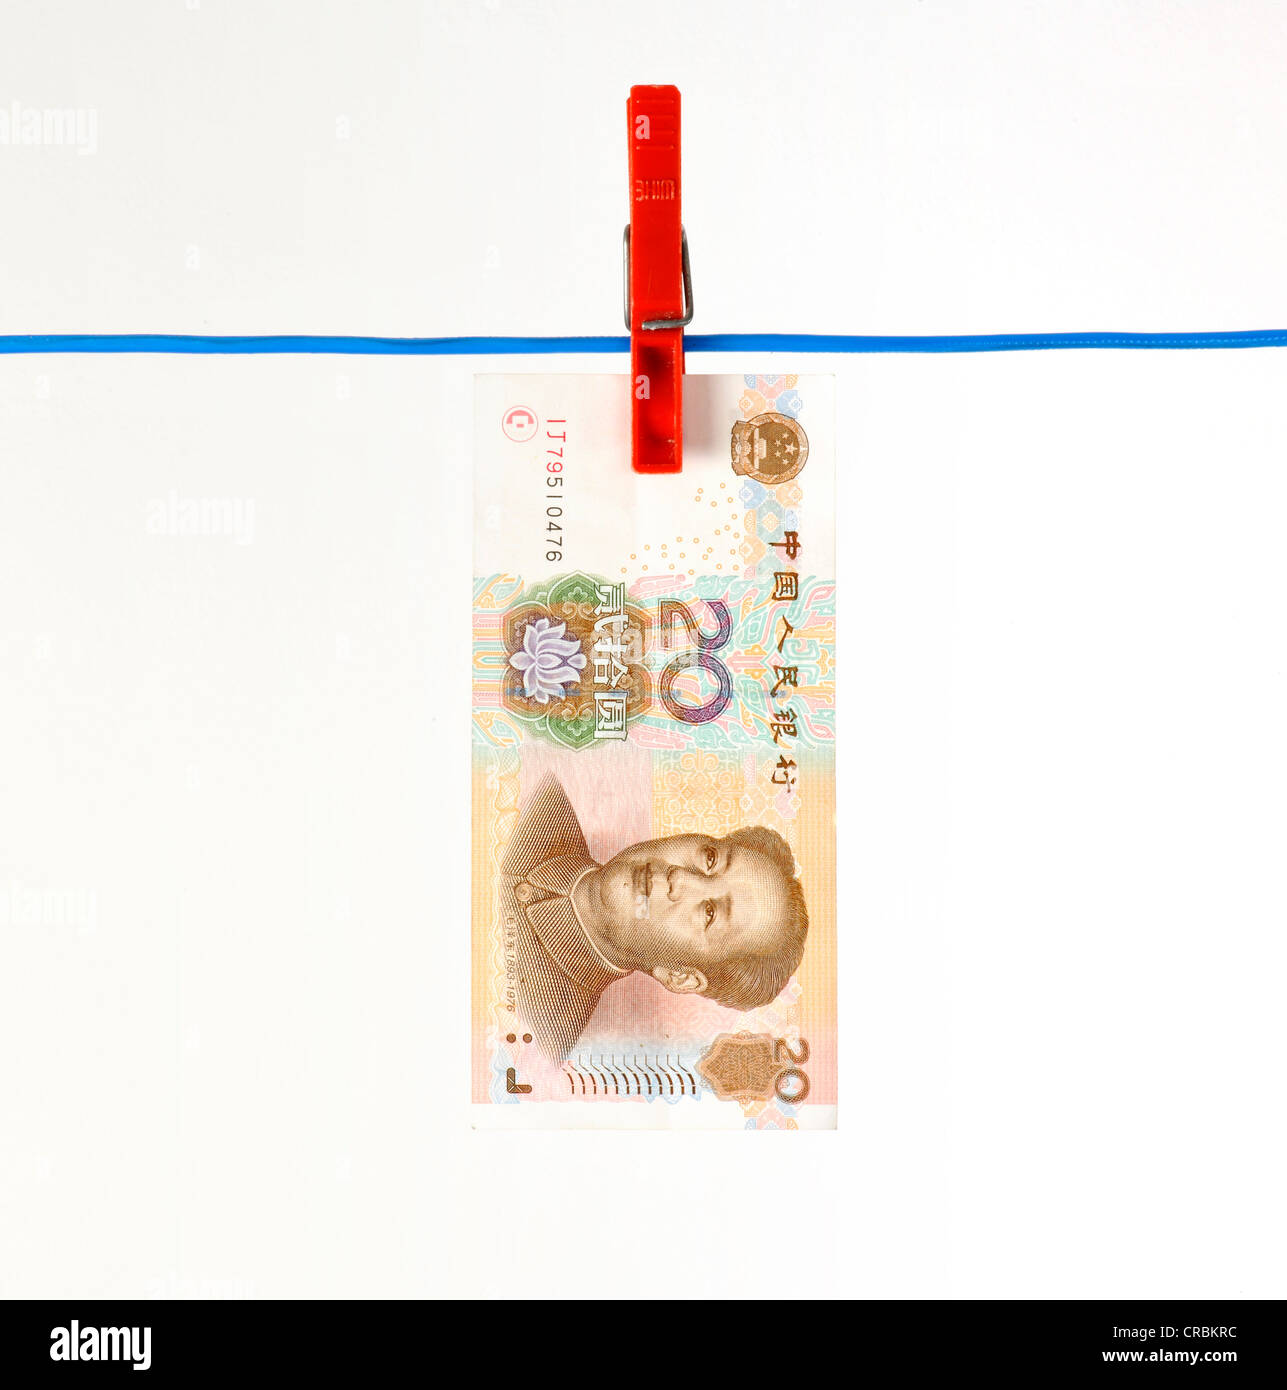 Yuán chino yuan renminbi, moneda de la República Popular de China, el banco en un tendedero, imagen simbólica de dinero Fotografía de stock -